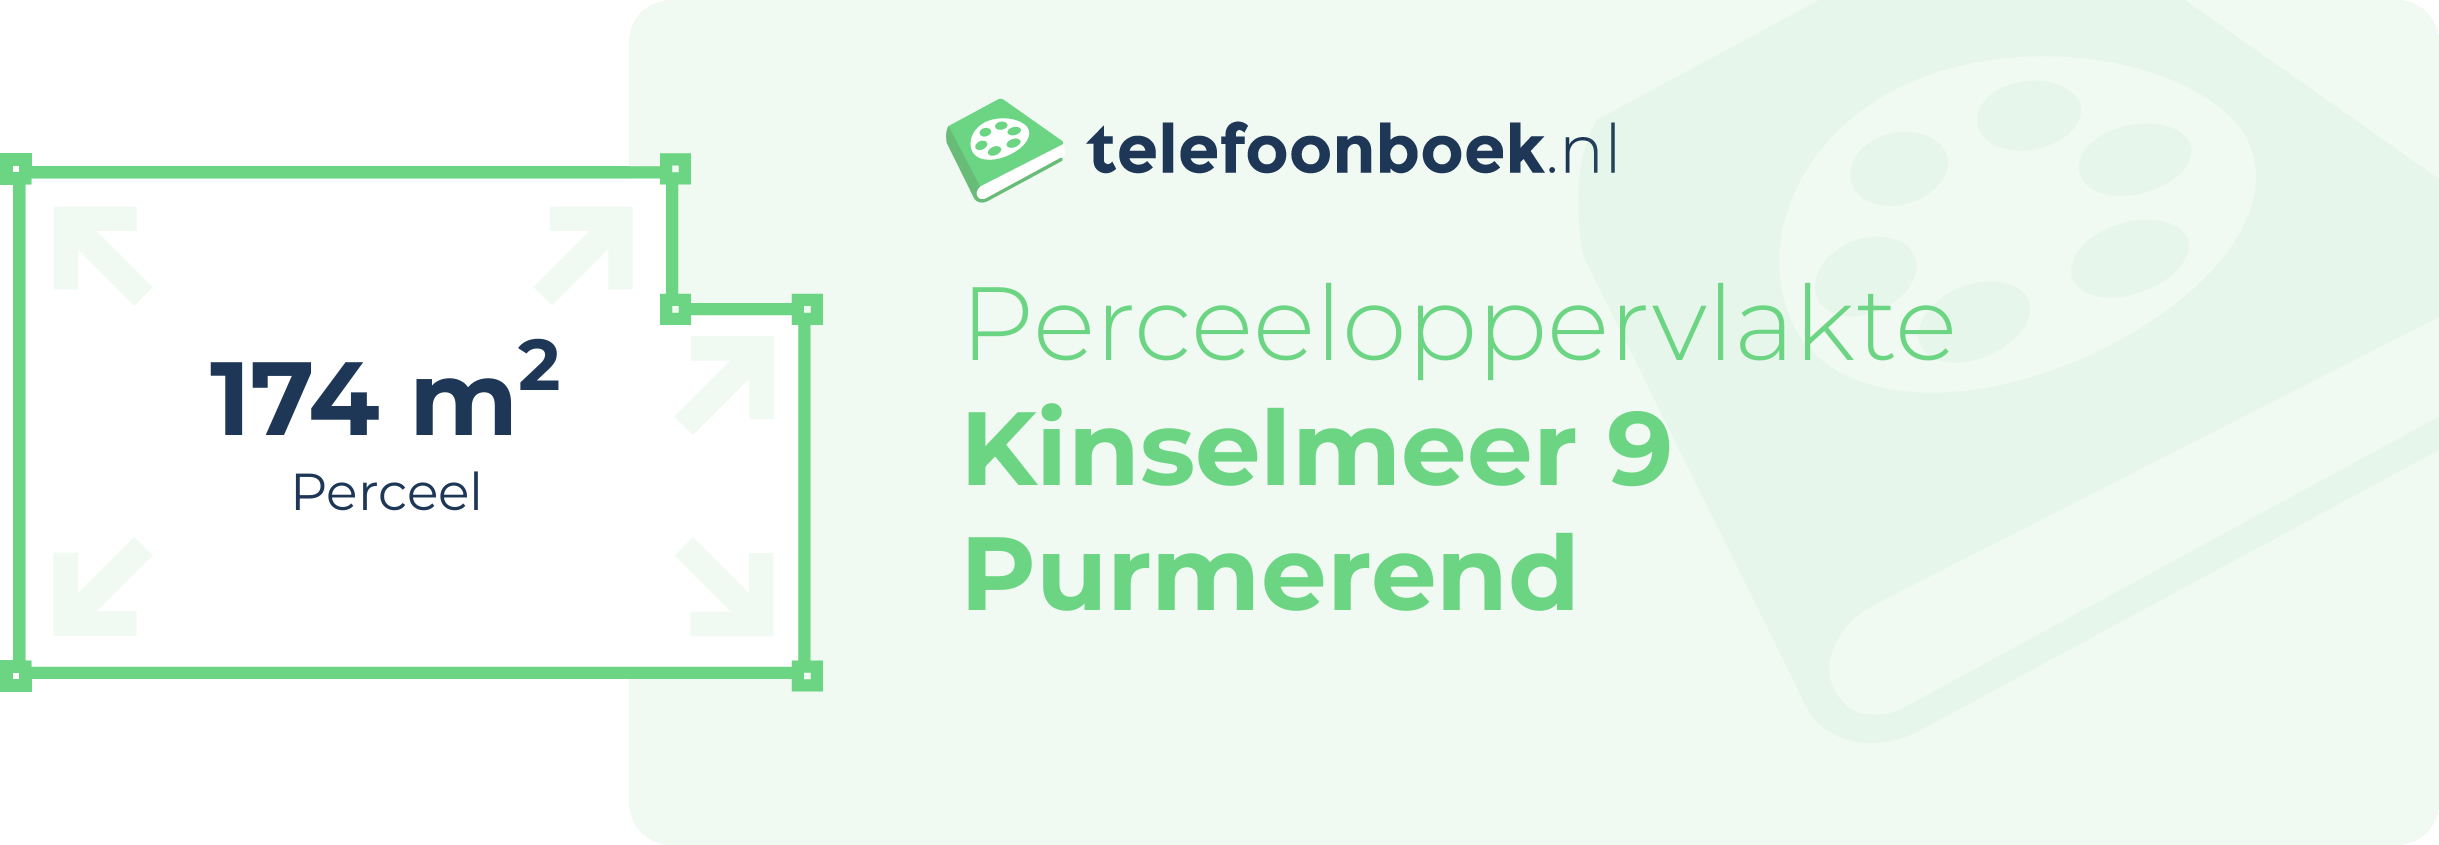 Perceeloppervlakte Kinselmeer 9 Purmerend